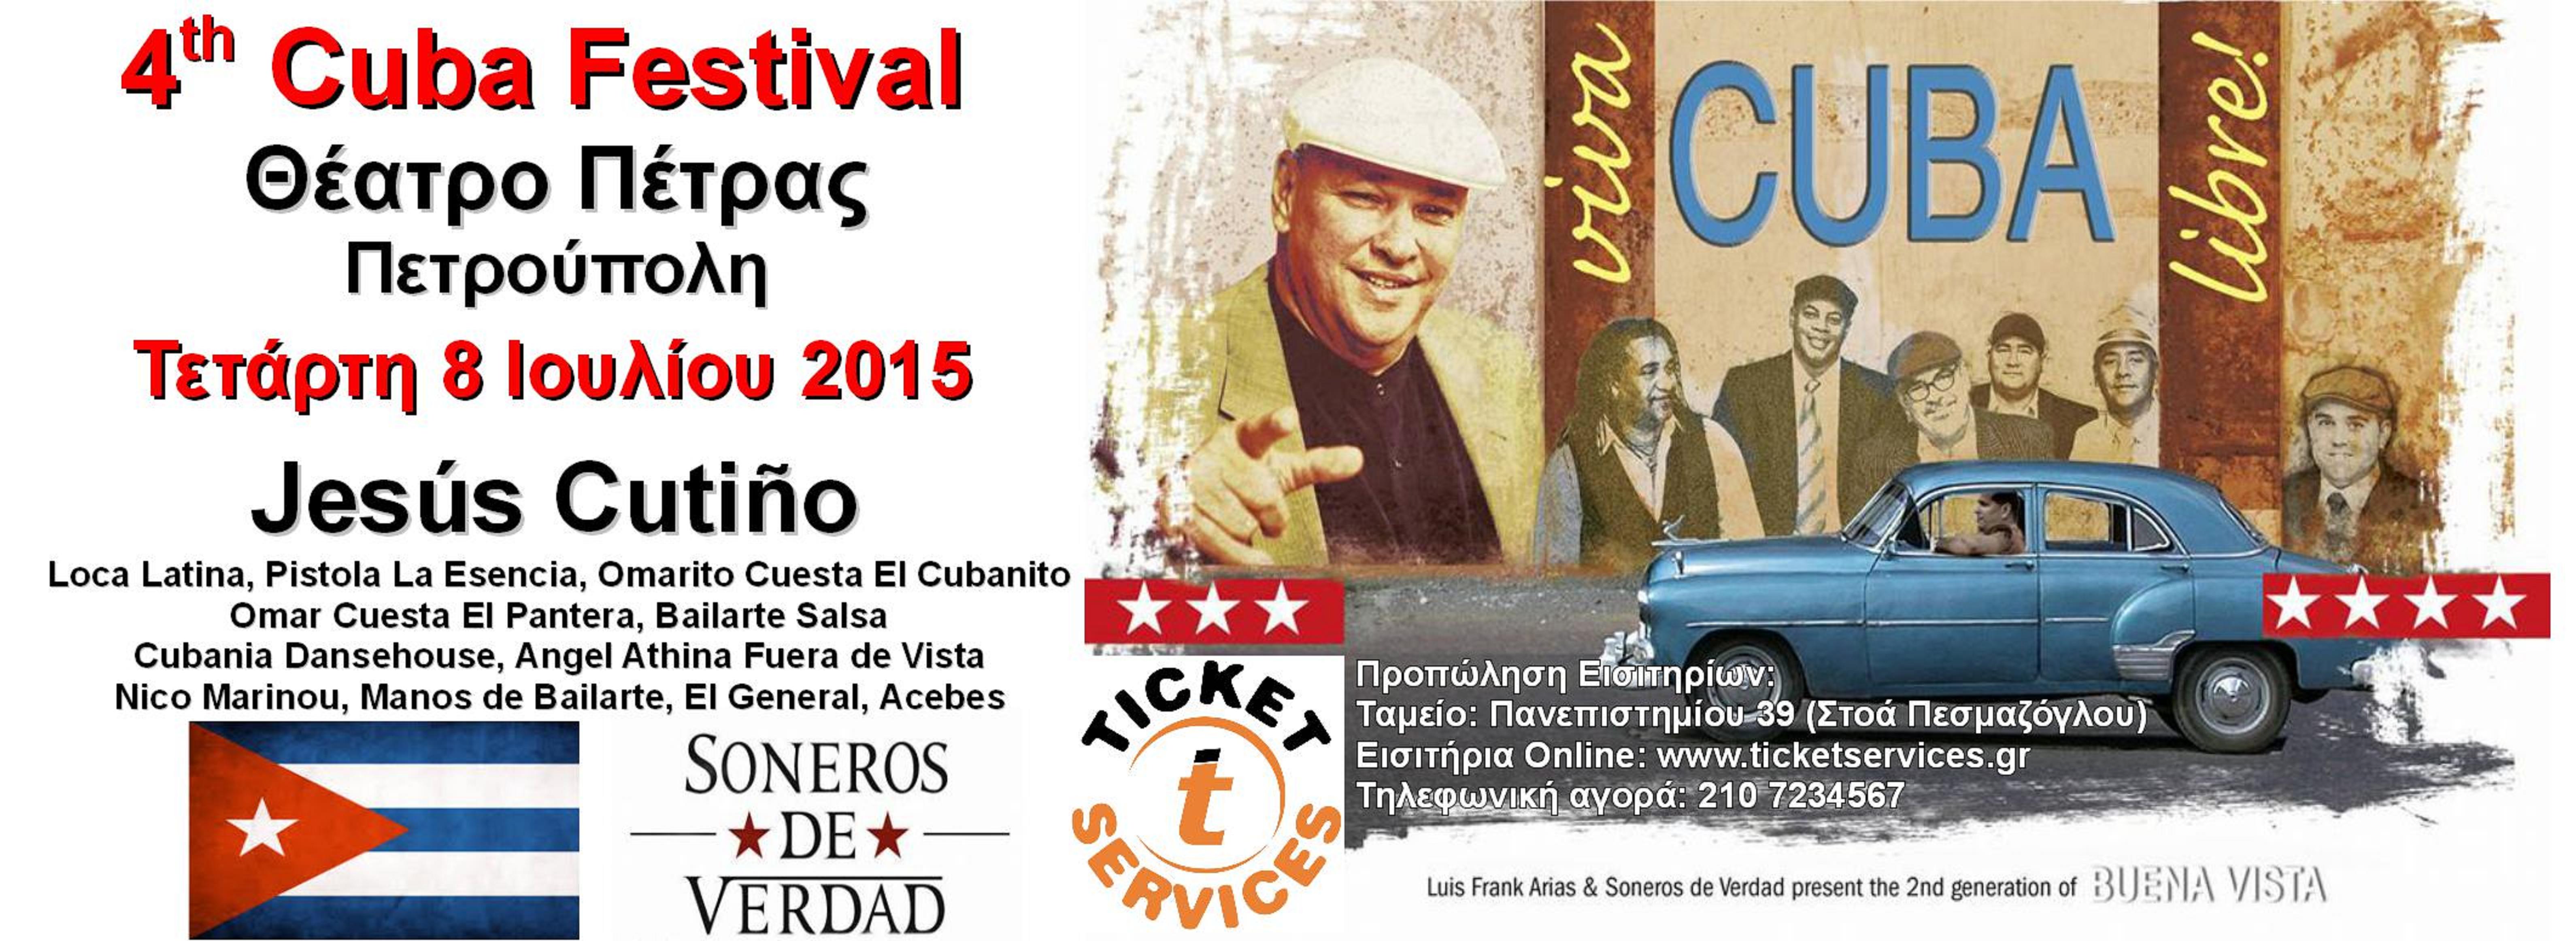 4ο CUBA FESTIVAL Τετάρτη 8 Ιουλίου 2015 ΘΕΑΤΡΟ ΠΕΤΡΑΣ-ΠΕΤΡΟΥΠΟΛΗ